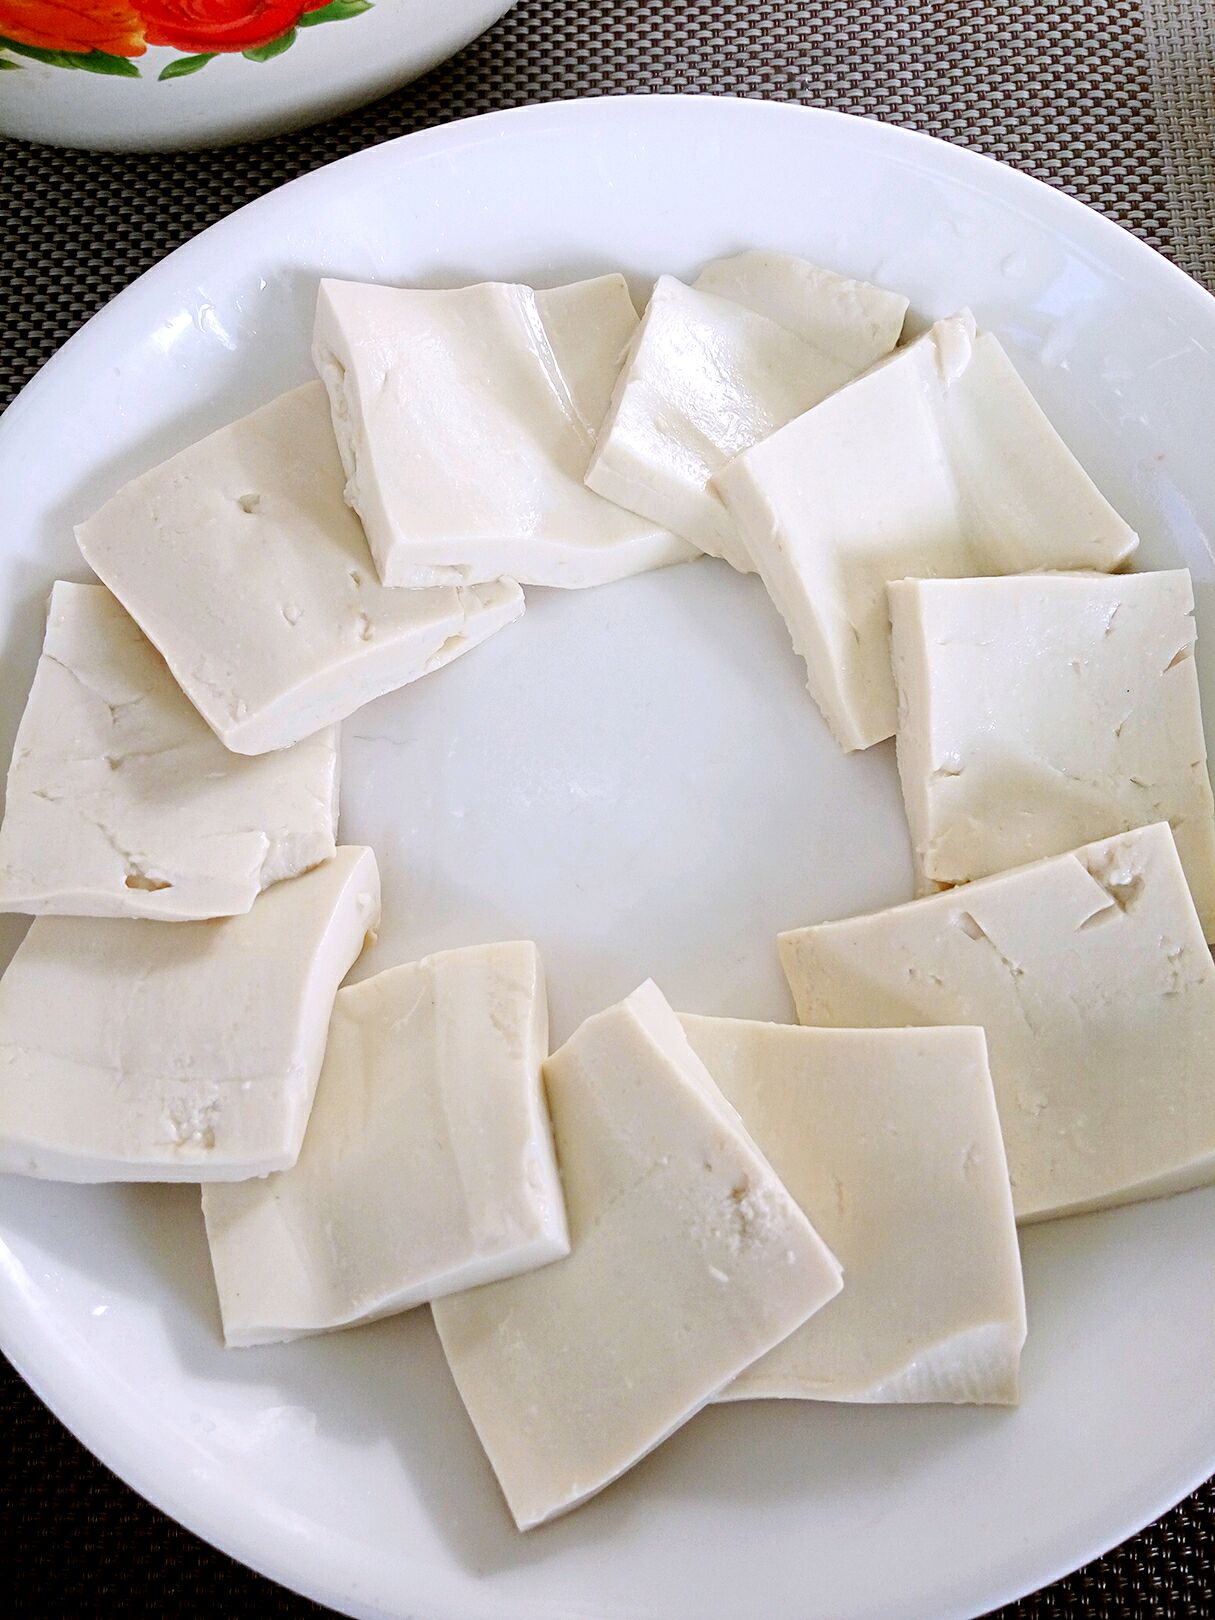 将豆腐切片摆盘,摆盘不仅仅是为了美观,这样搭可以让汤汁顺着豆腐流